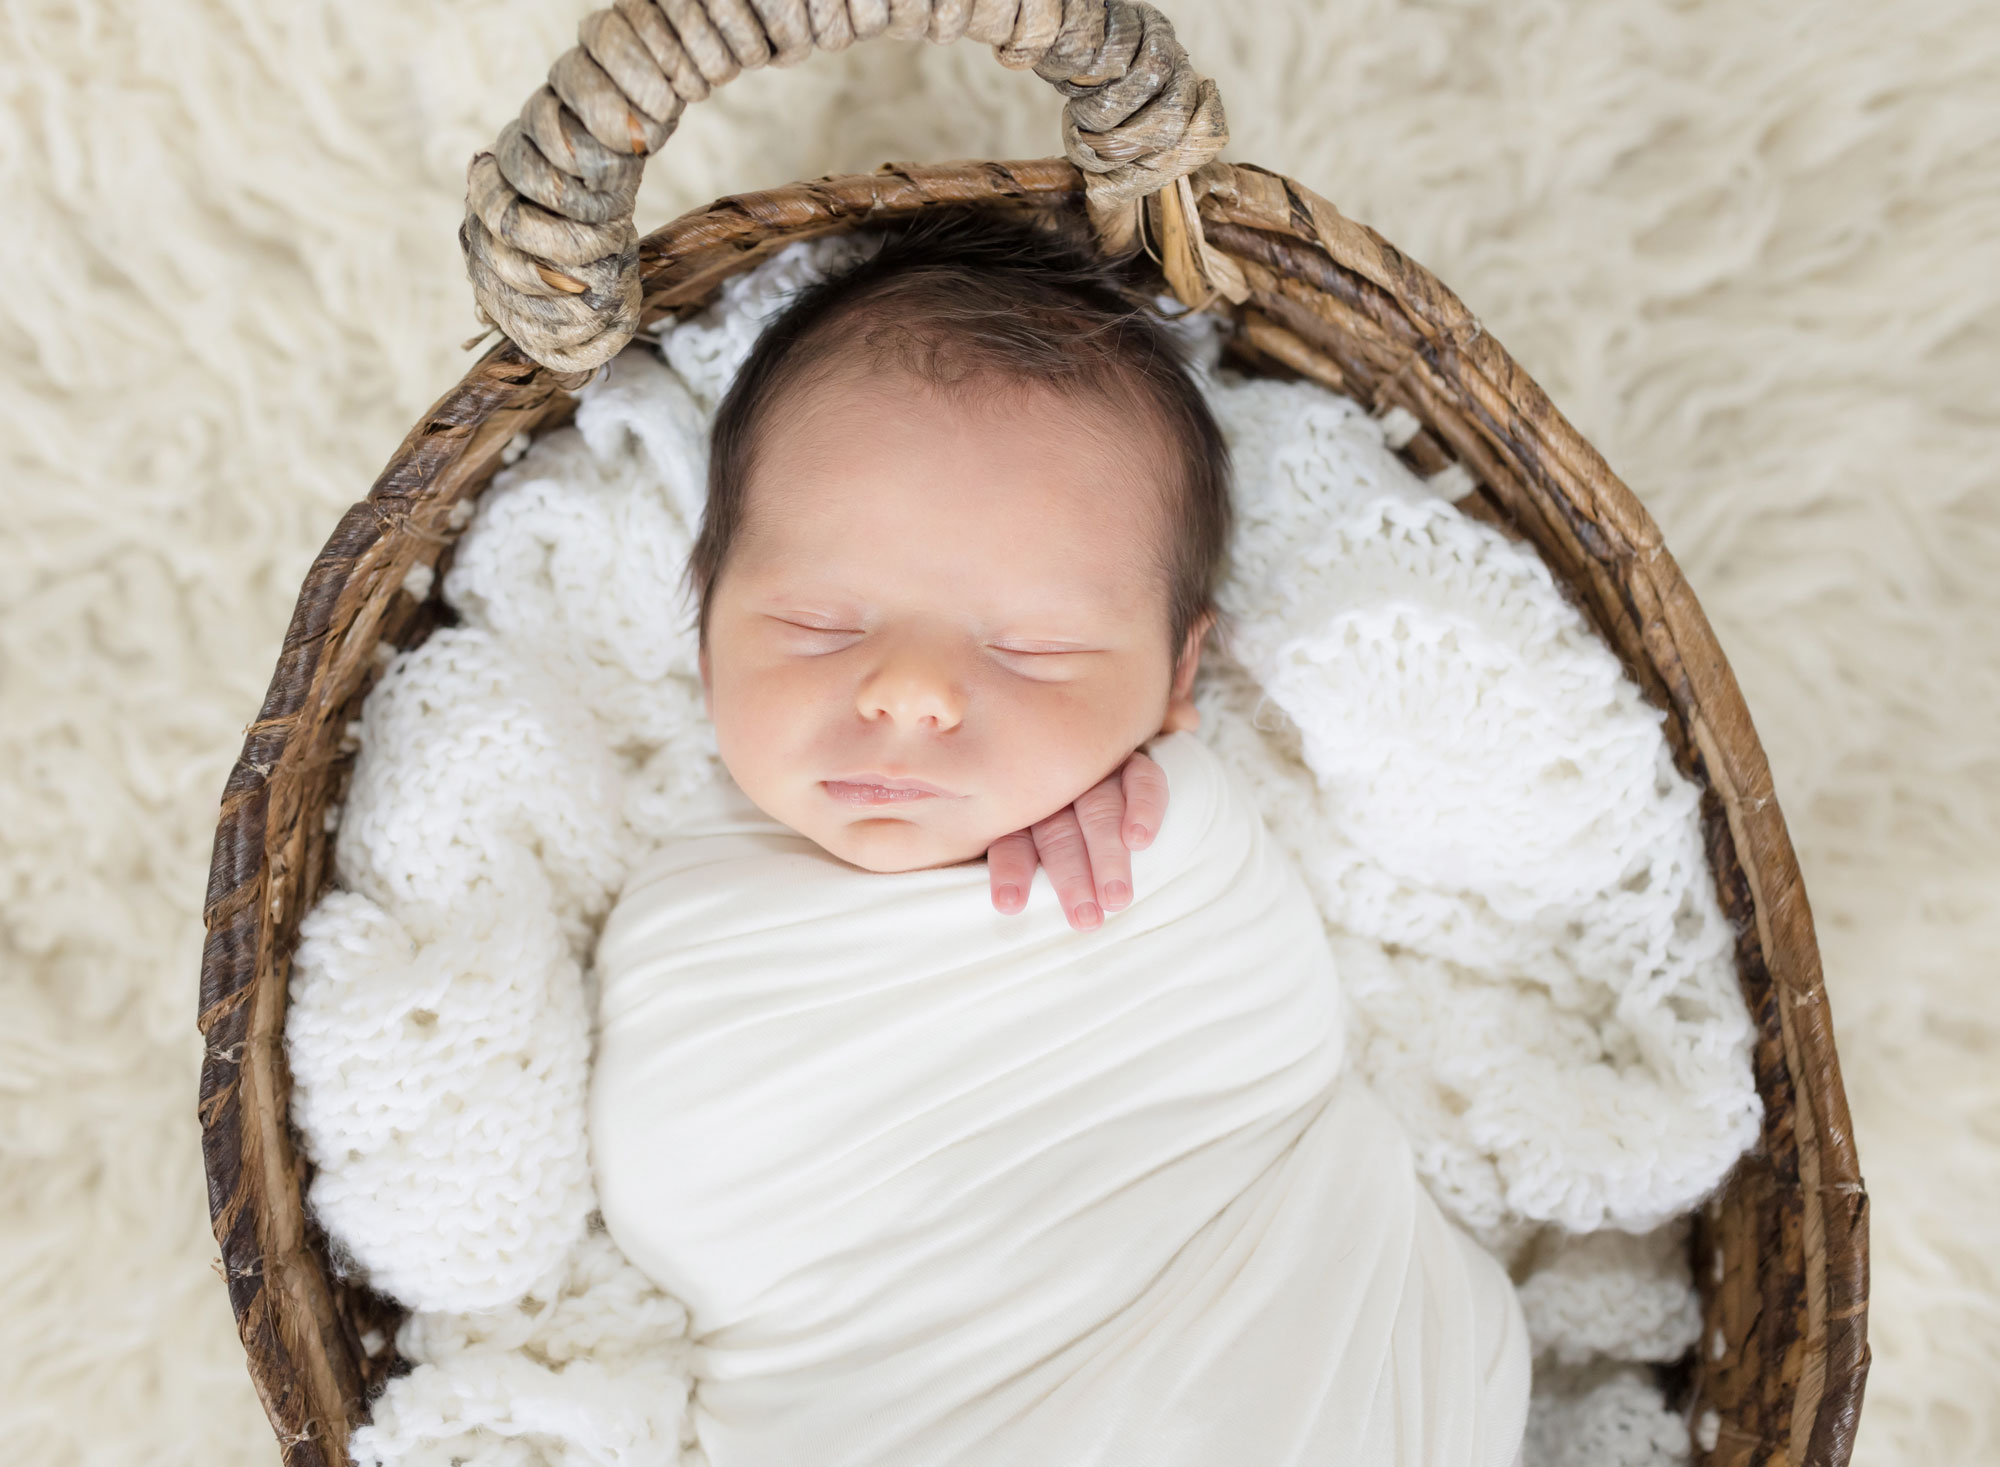 newborn baby boy in white and basket